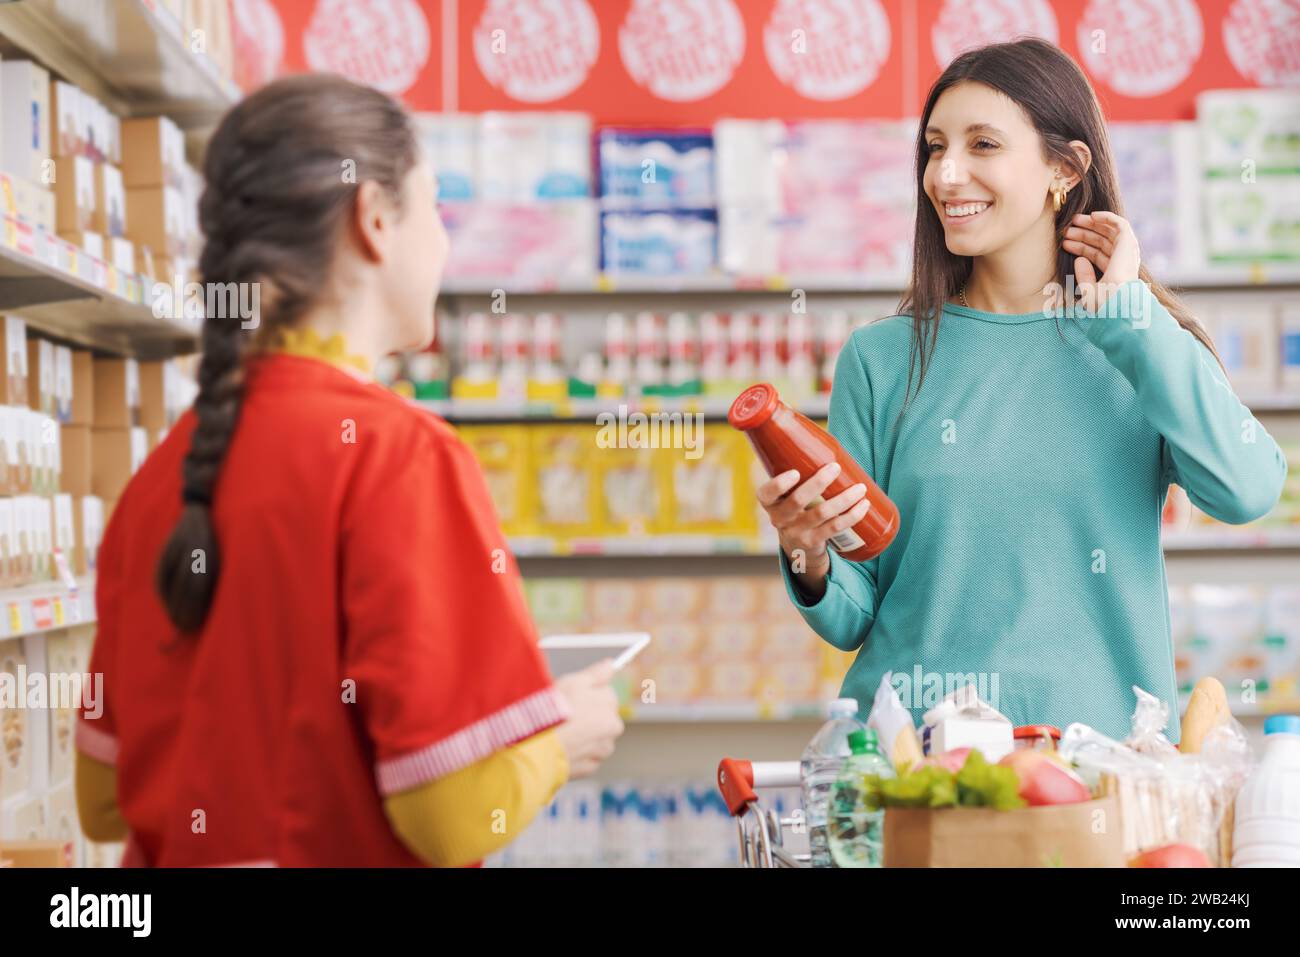 Freundlicher Mitarbeiter im Lebensmittelgeschäft hilft einer Frau, der Kunde lächelt und hält ein Produkt in der Hand Stockfoto